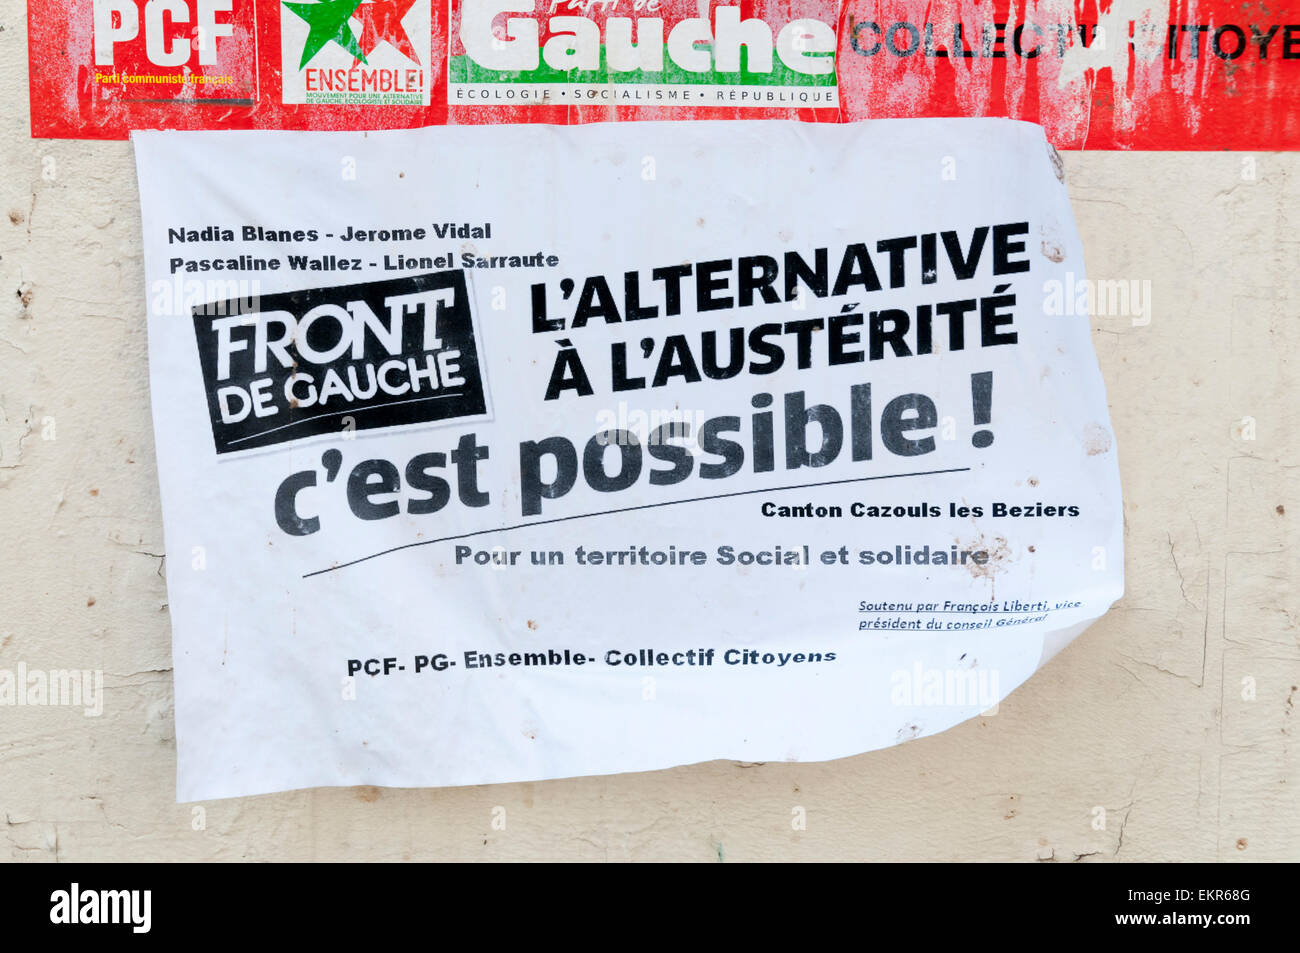 Front de Gauche manifesto politico in Francia a proporre un alternativa di austerità. Foto Stock